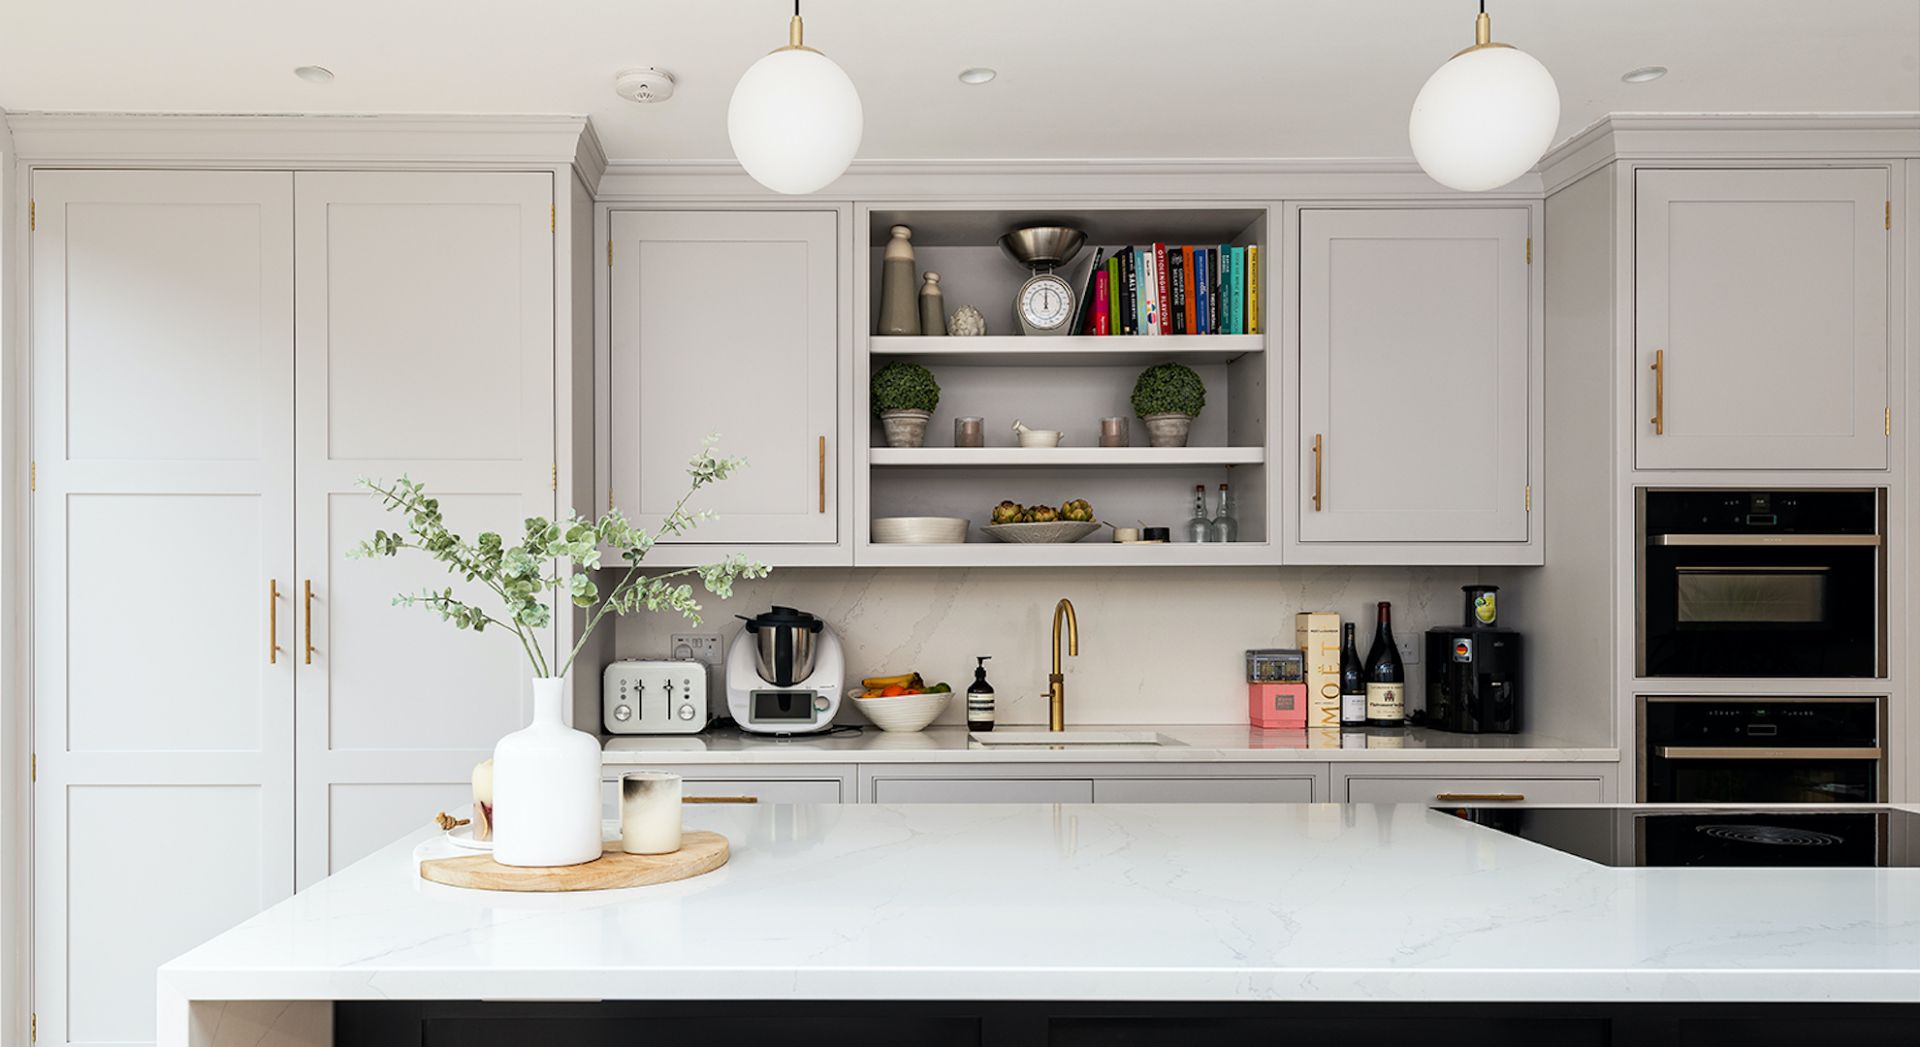 Small kitchen storage ideas: 18 ways to boost storage in a bijou space